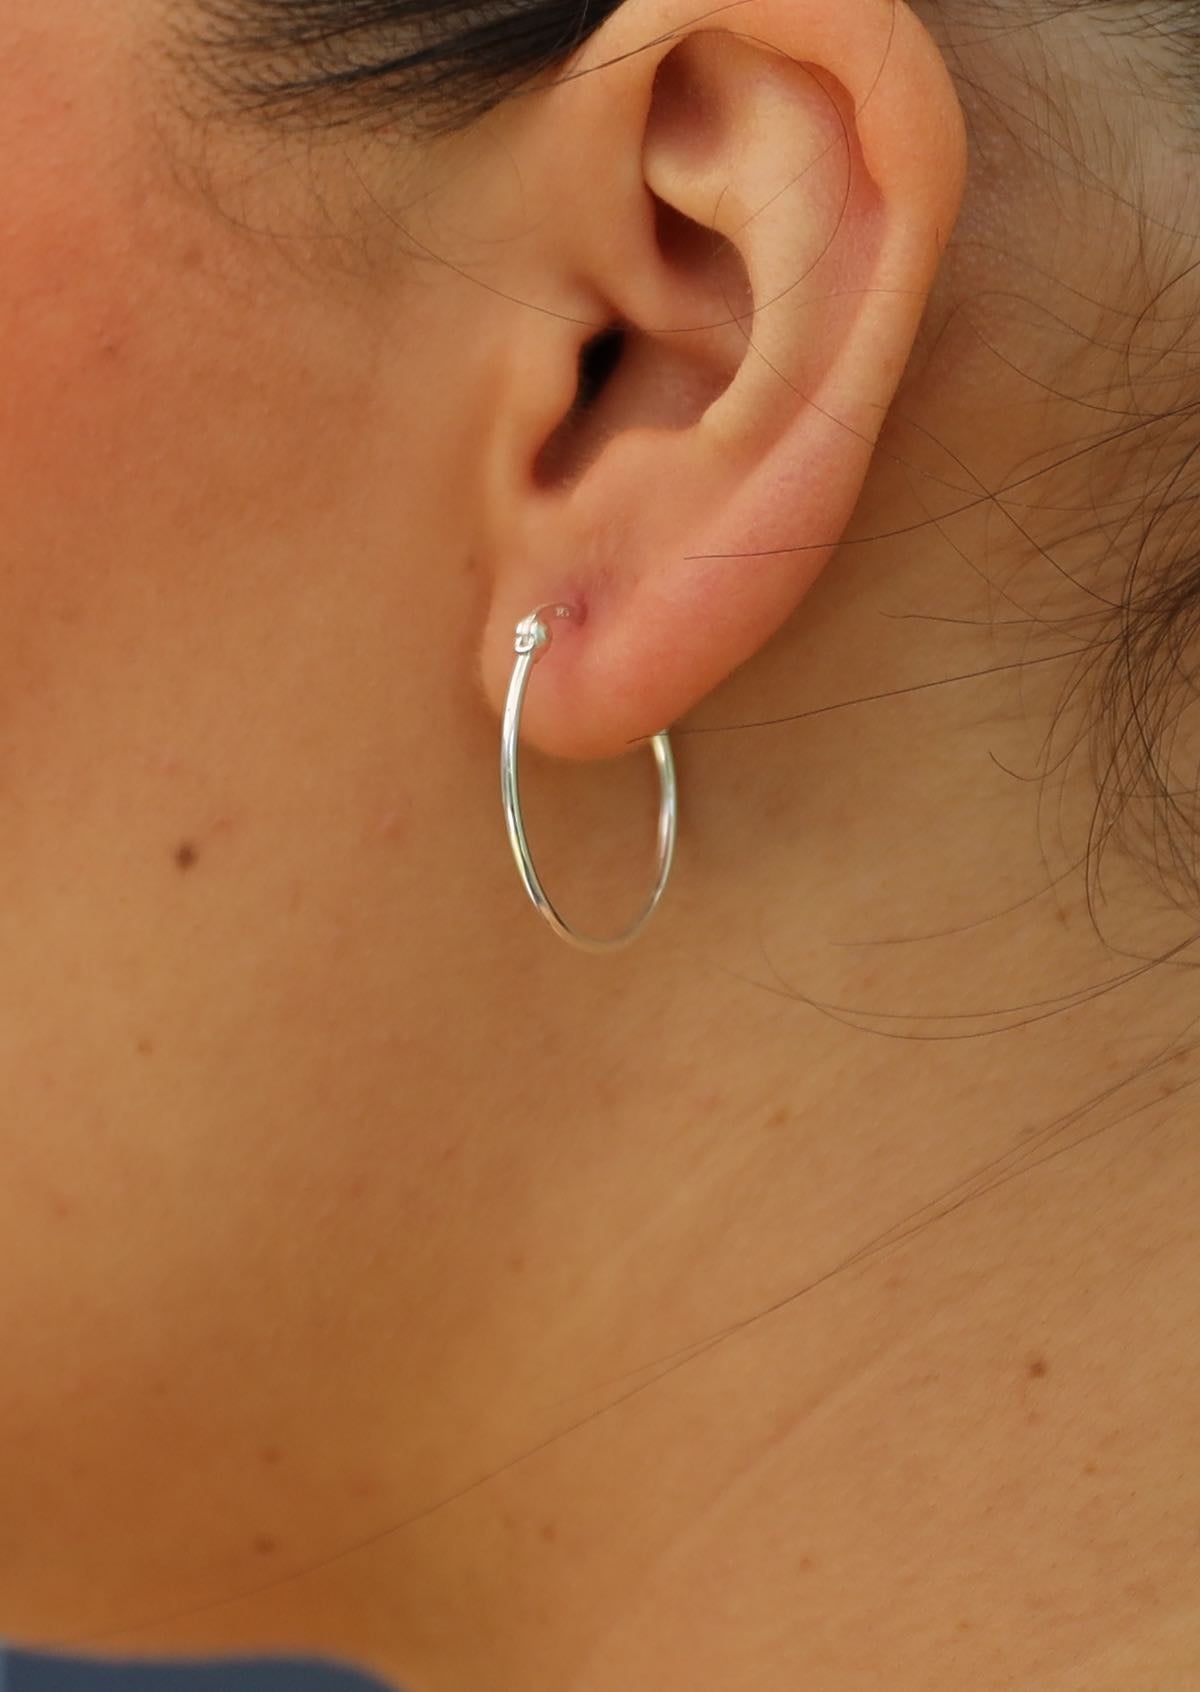 Slim sliver hoop earring on ear